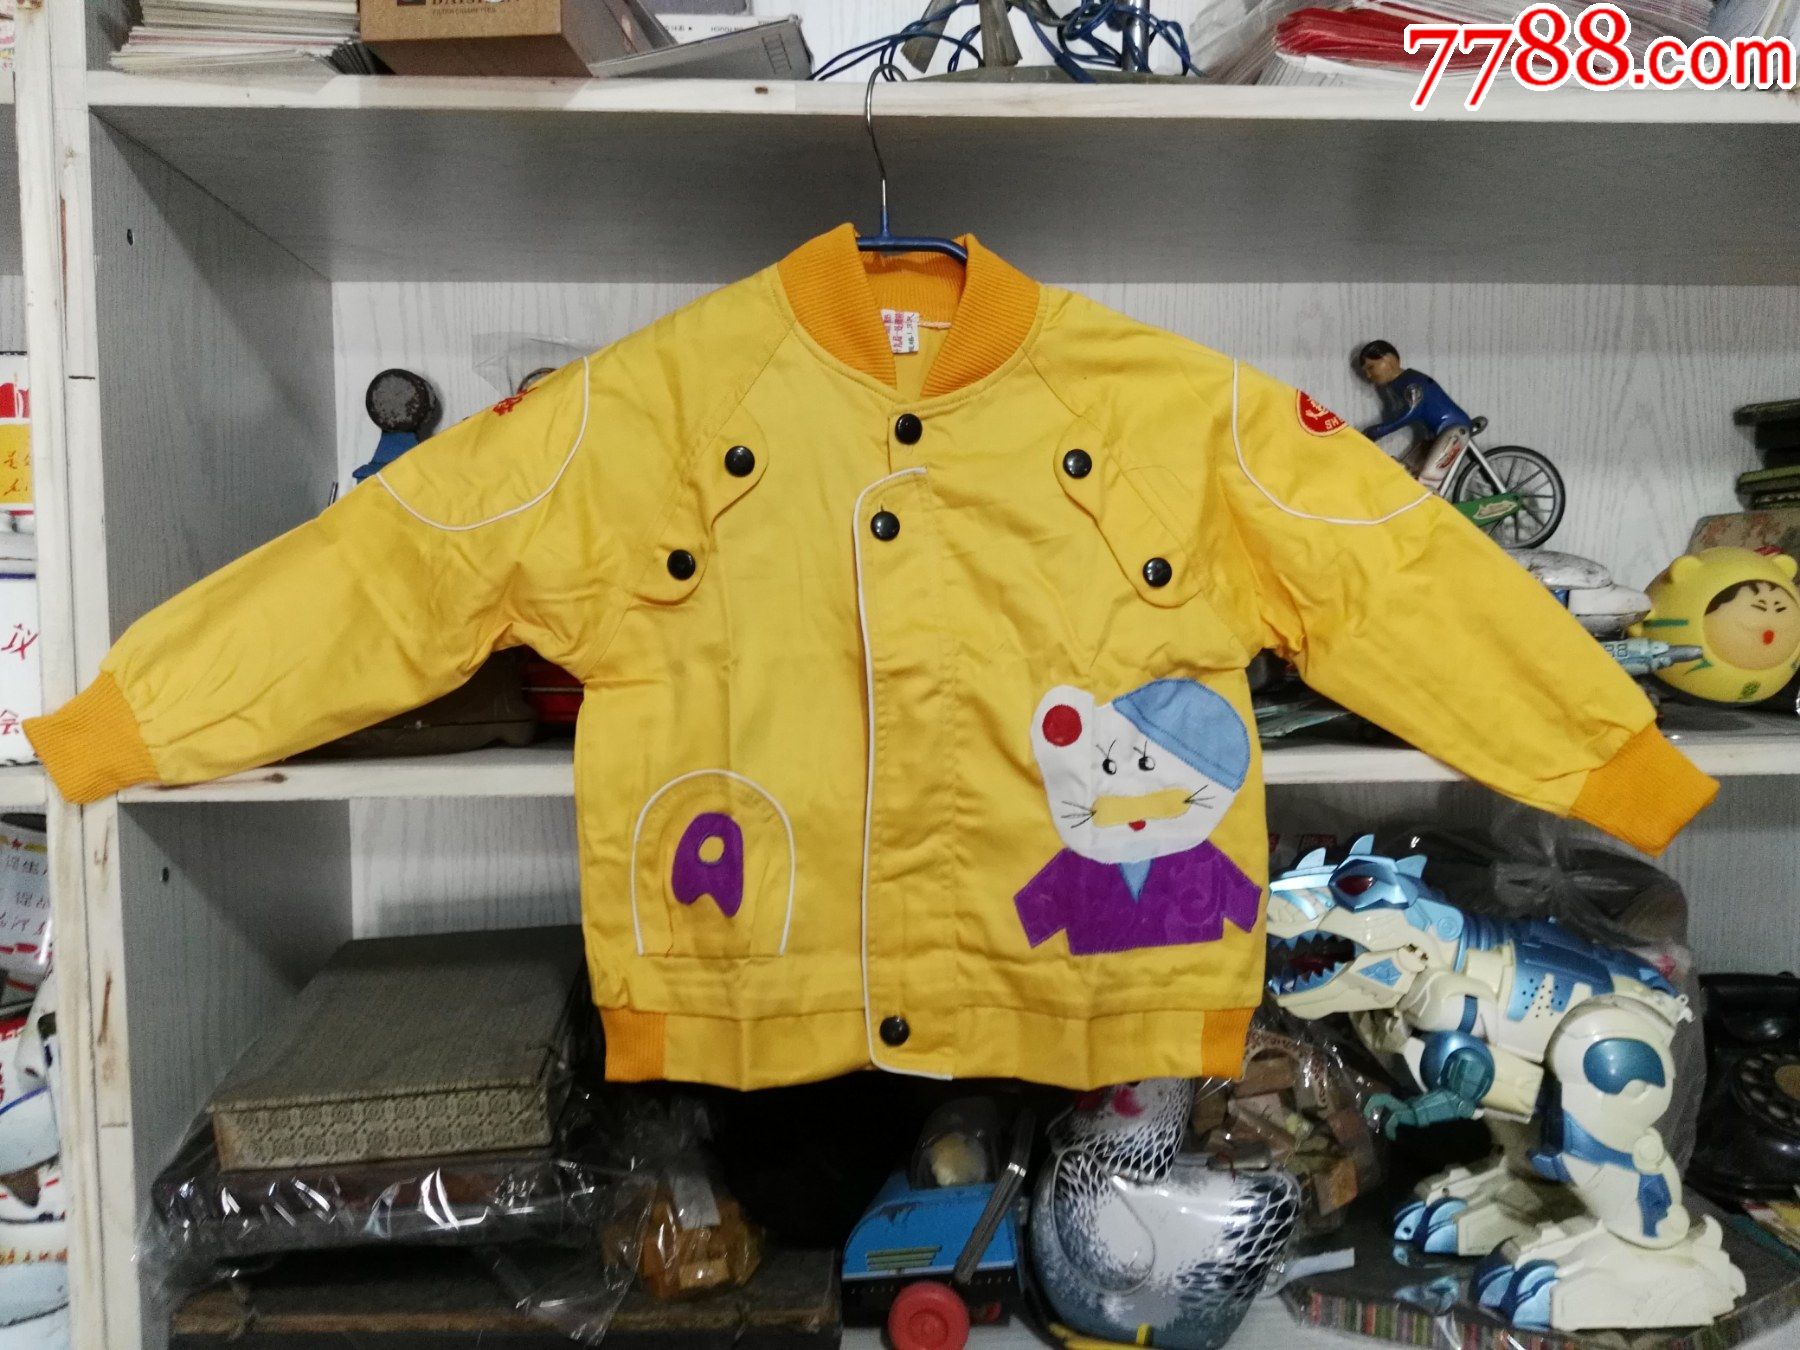 90年代铁道部第十九局一处服装厂制新式黄色童装10套,10元1套,售100元